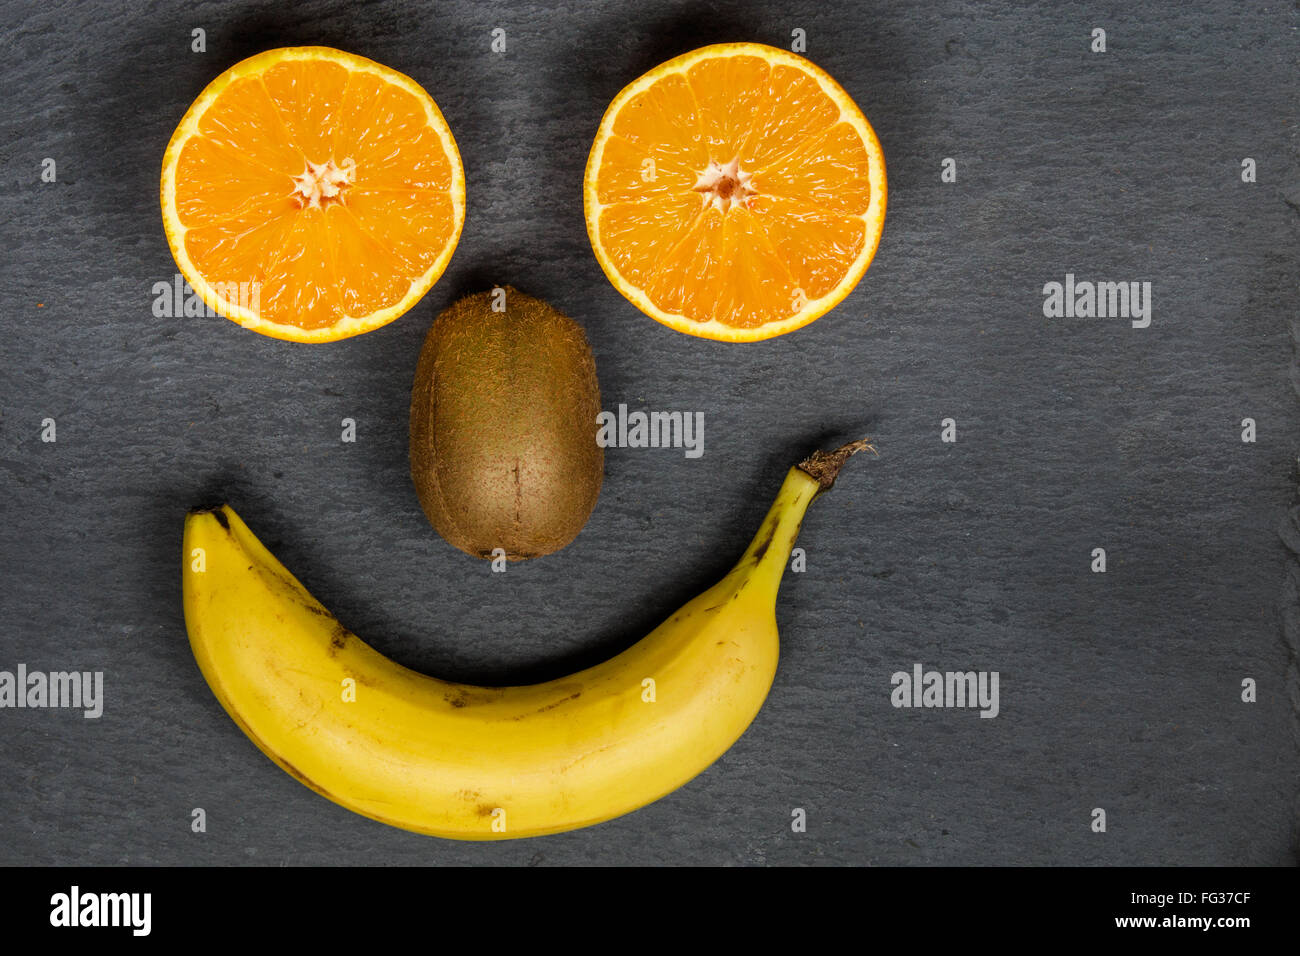 Früchte zu essen machen Sie Lächeln wie dieses glückliches Gesicht. Essen Sie Bio, bleiben Sie gesund zu. Essen-Platte mit Früchten auf einem dunklen Hintergrund. Stockfoto